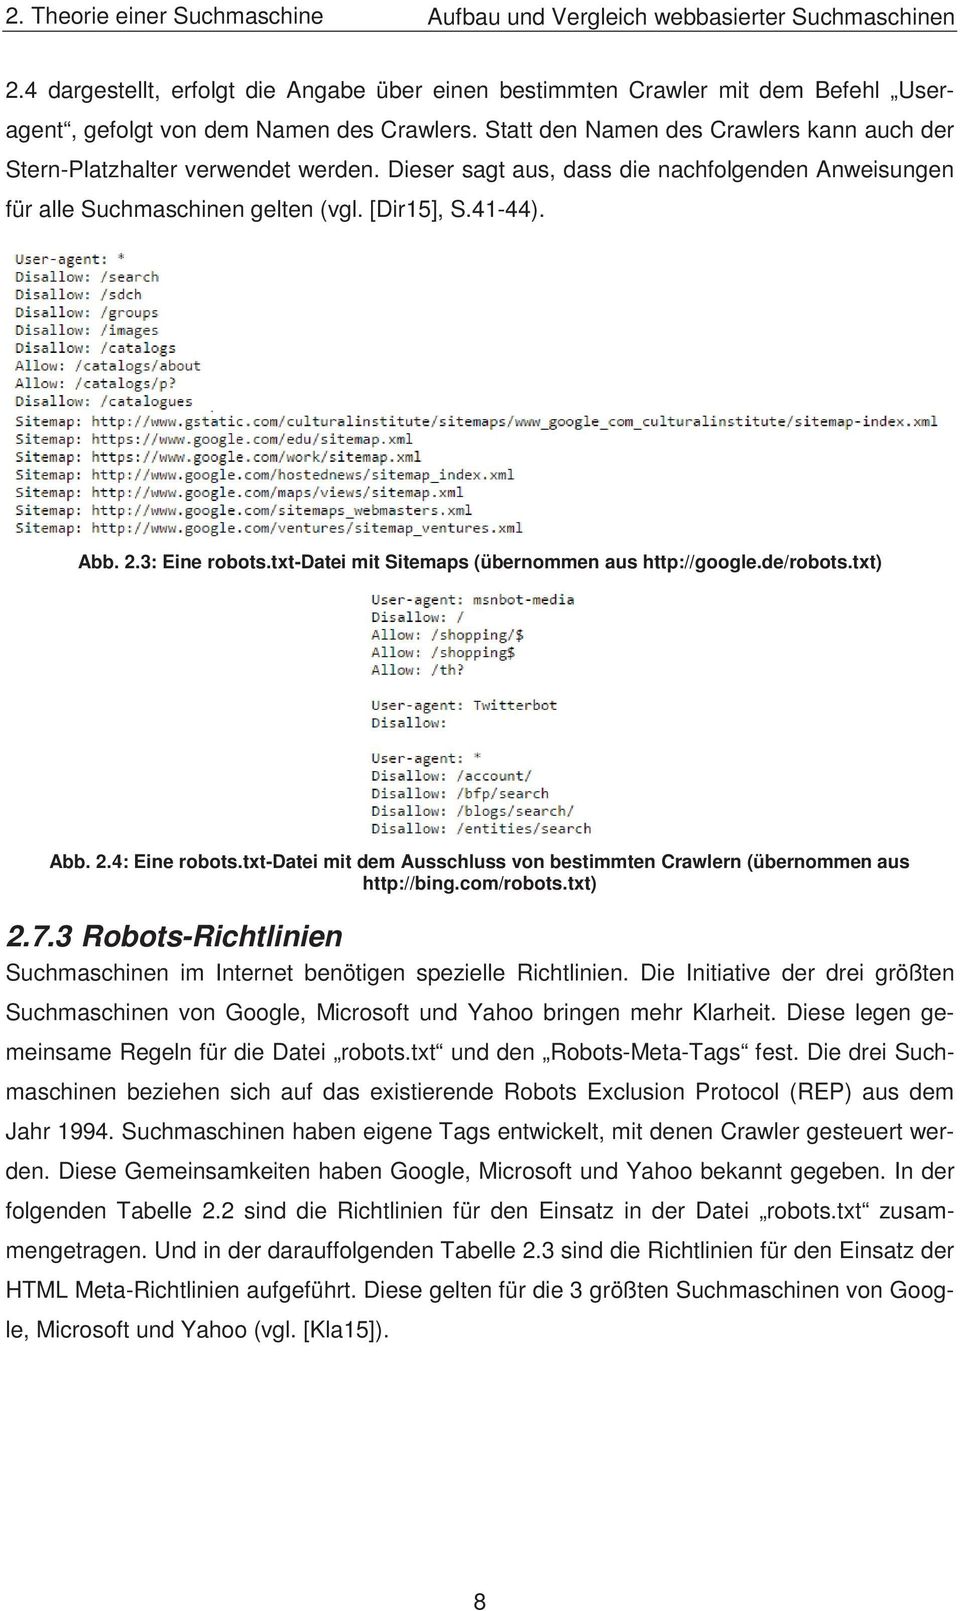 3: Eine robots.txt-datei mit Sitemaps (übernommen aus http://google.de/robots.txt) Abb. 2.4: Eine robots.txt-datei mit dem Ausschluss von bestimmten Crawlern (übernommen aus http://bing.com/robots.